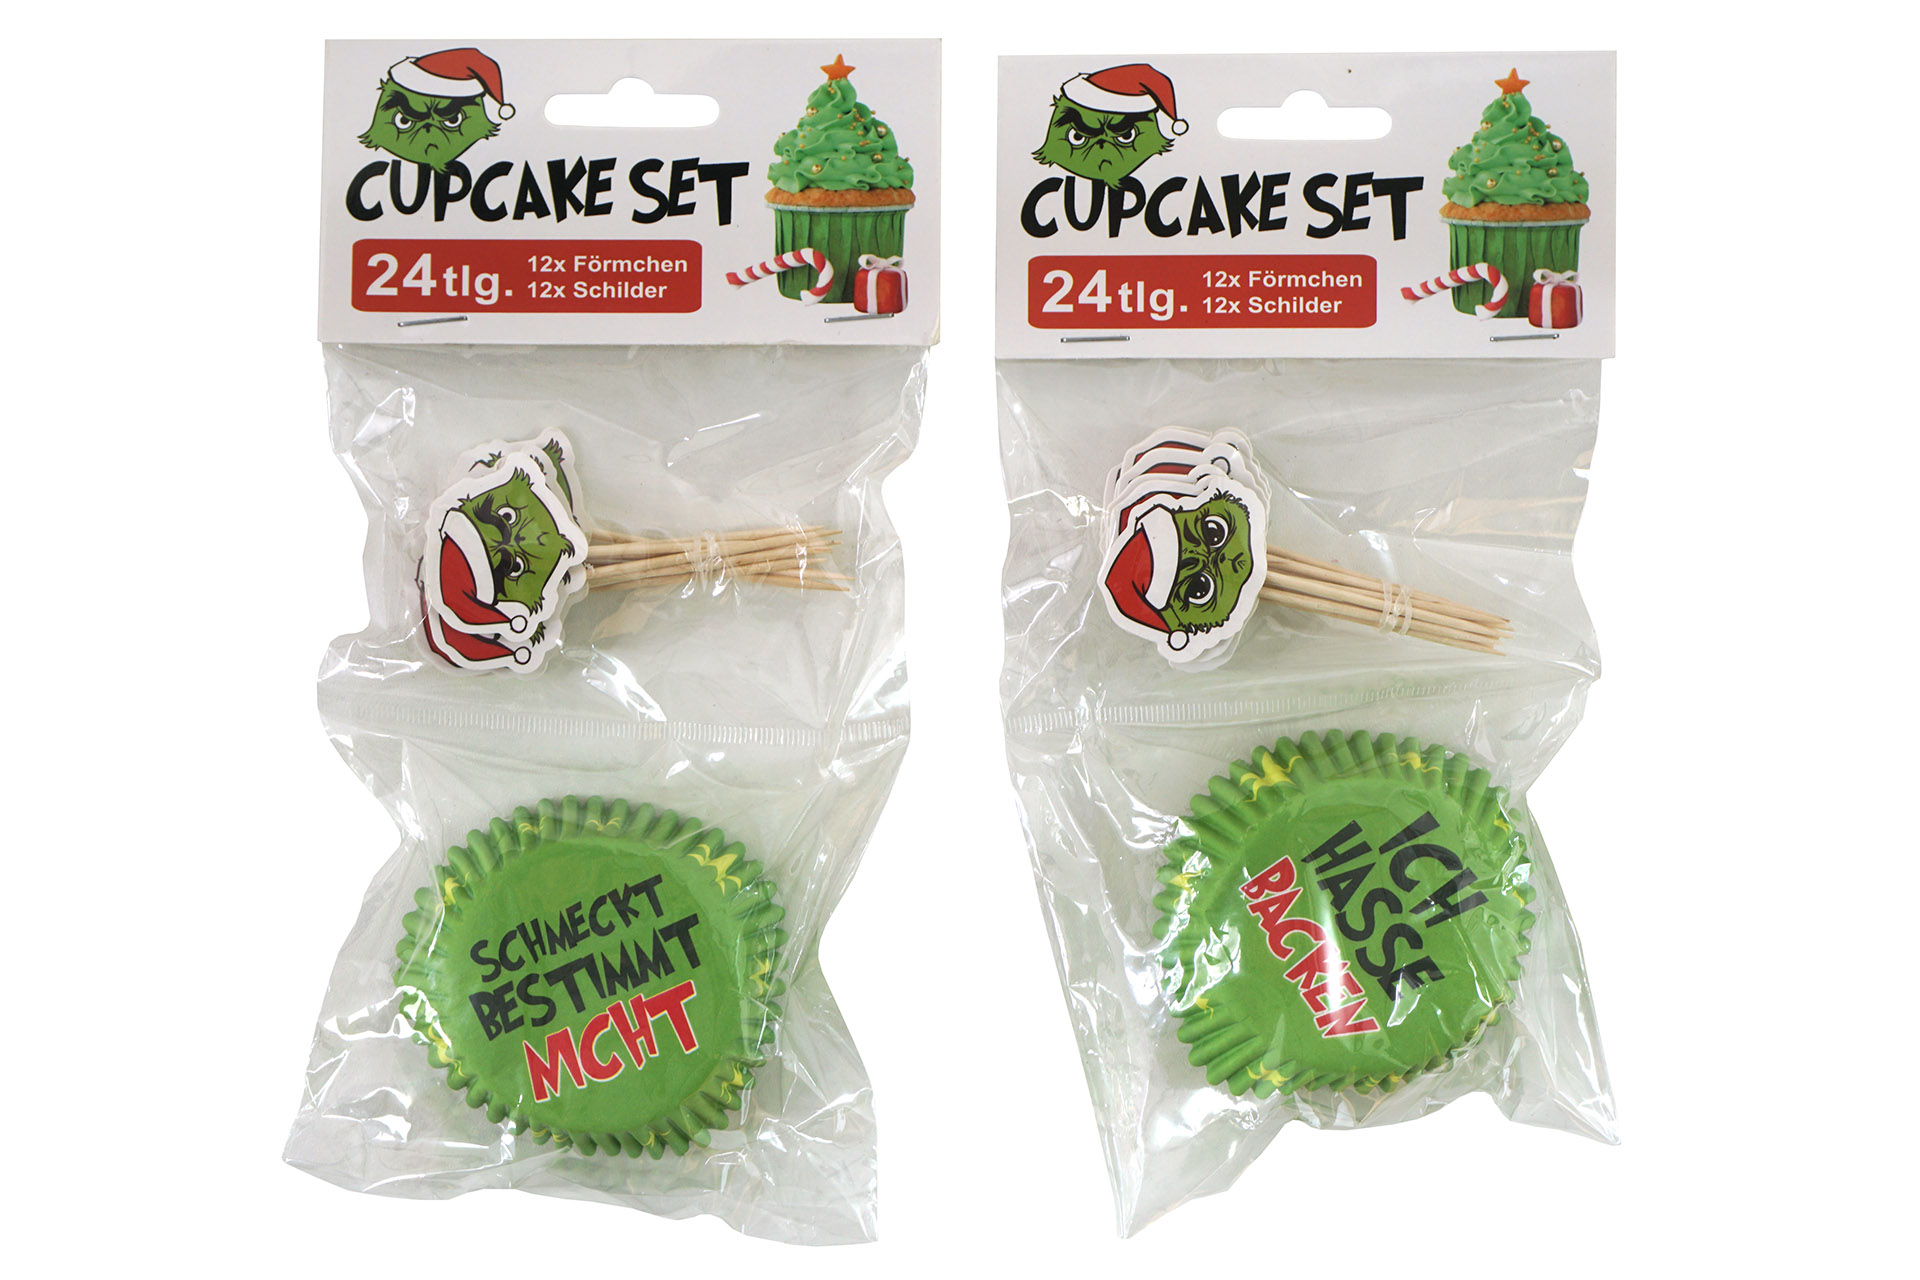 Cupcake Set Weihnachten "Festtags-Muffel" 24tlg, Förmchen und Schilder